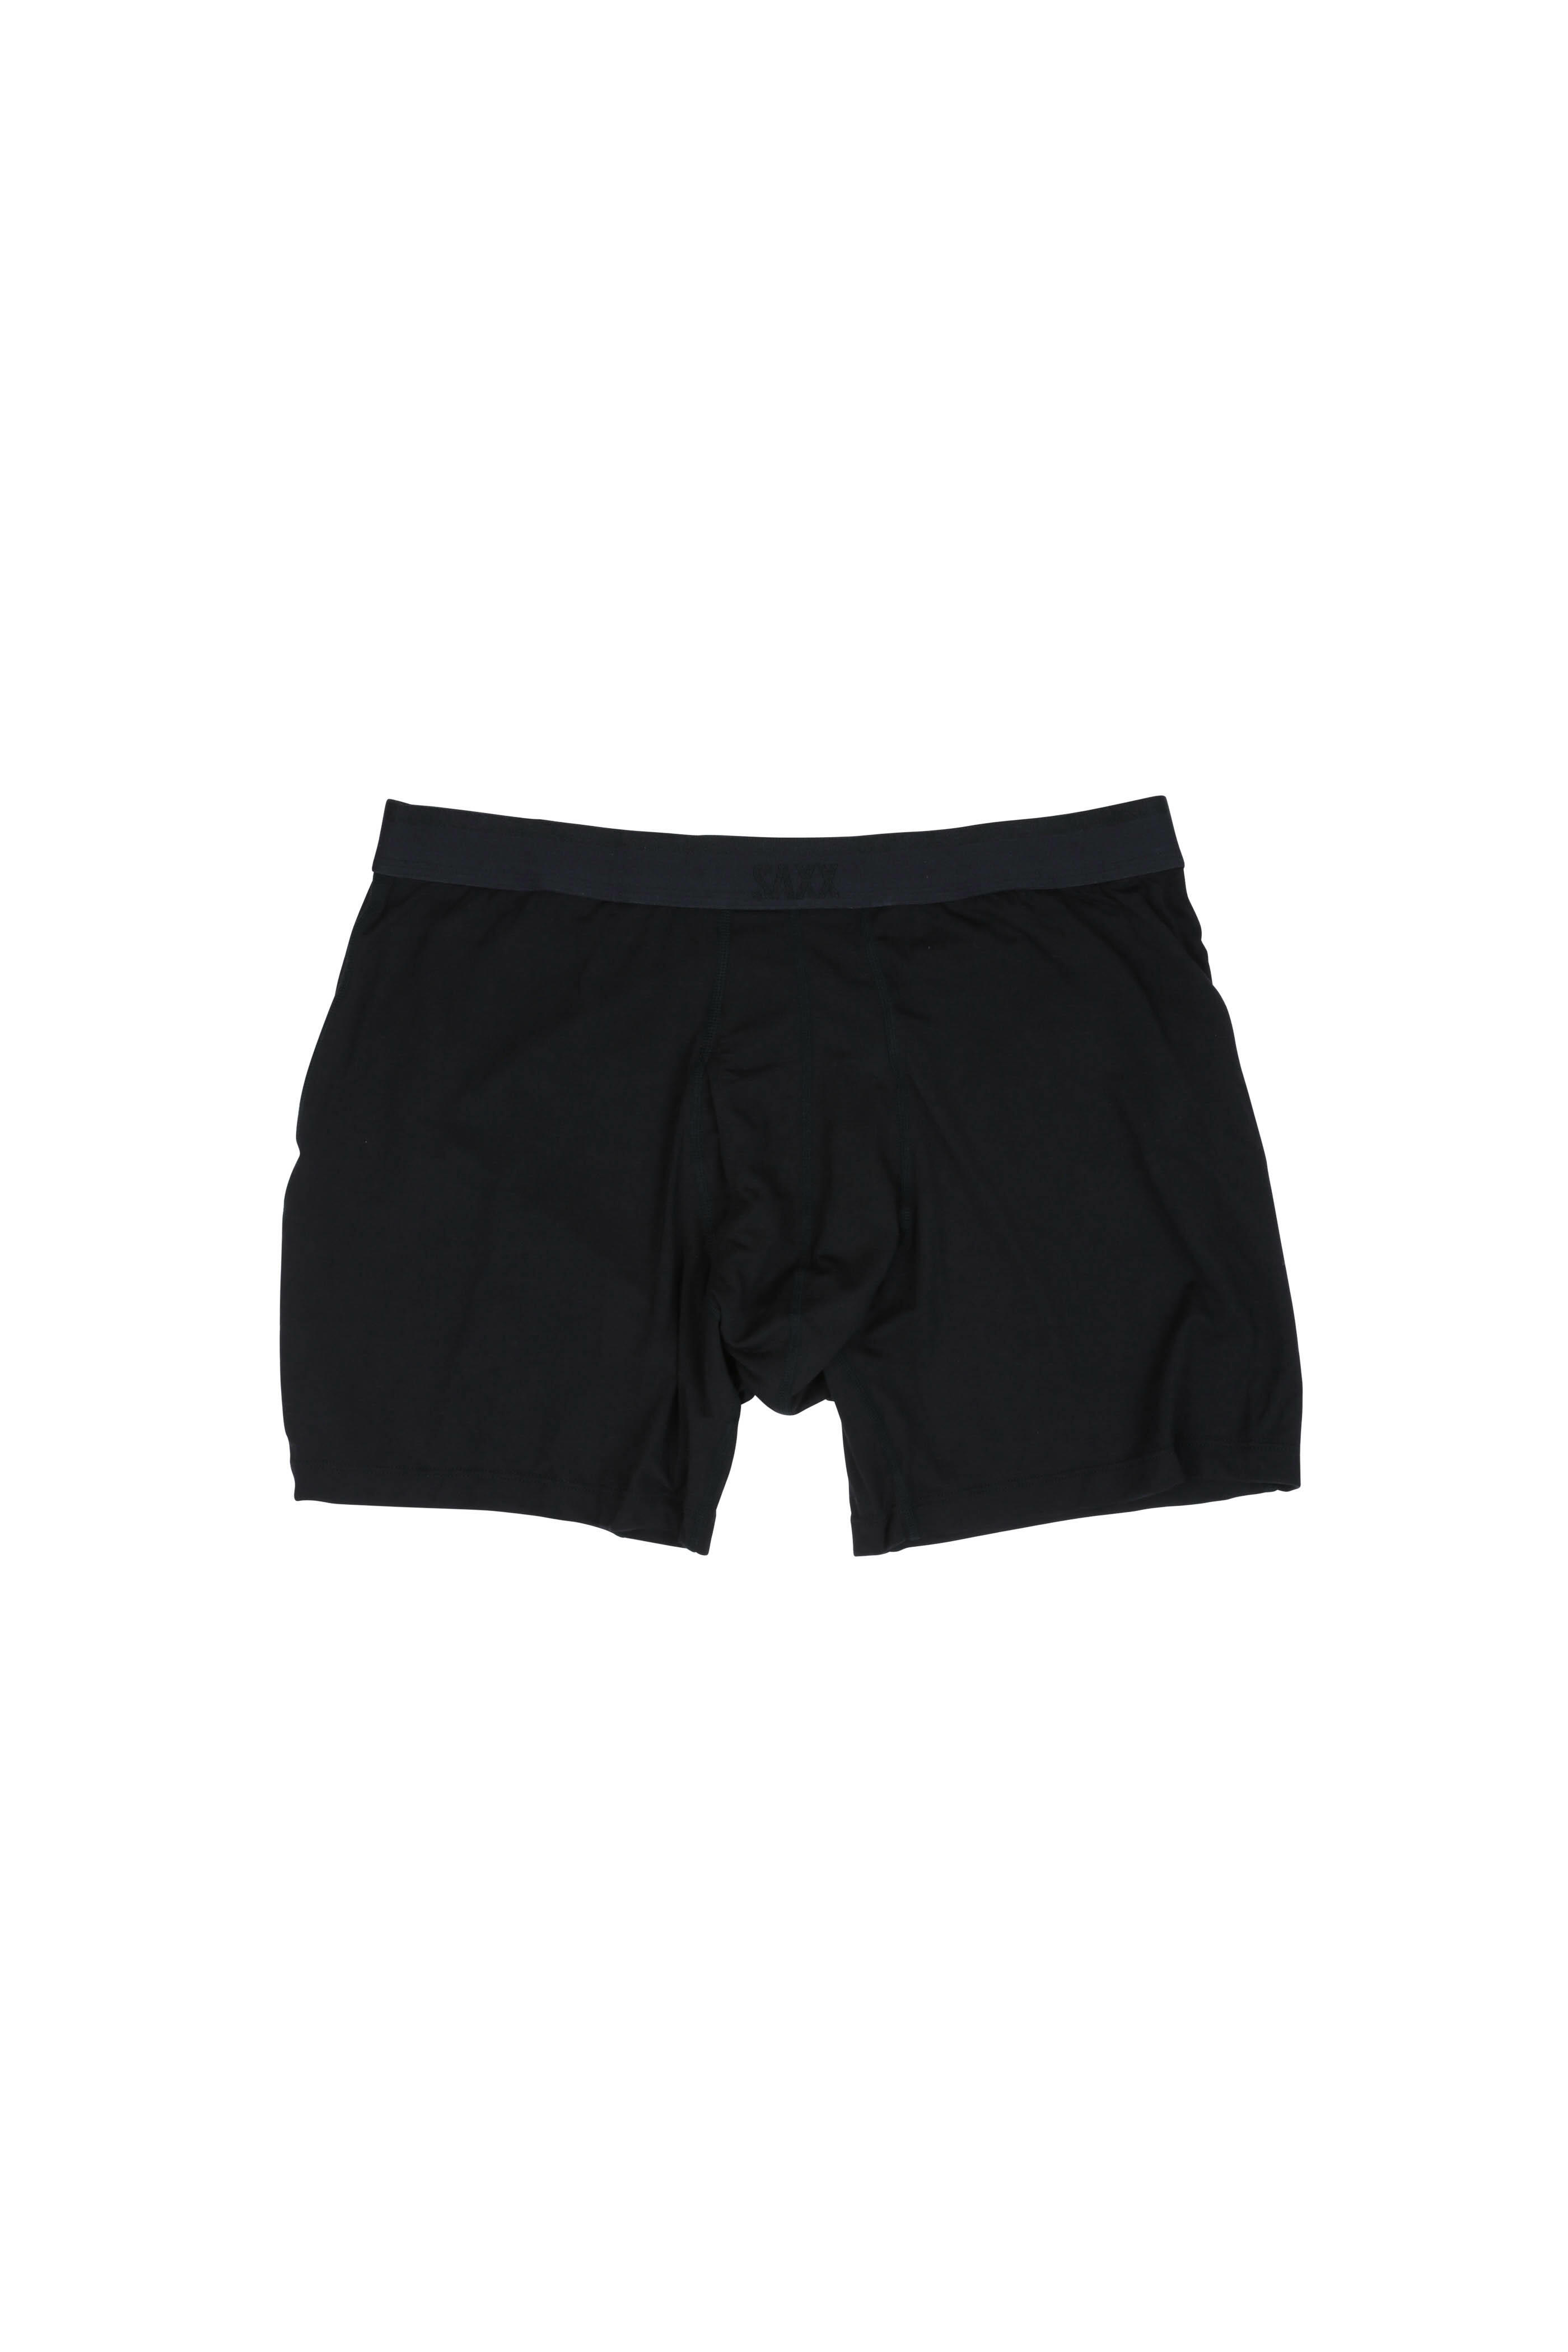 Saxx Underwear - Platinum Black Boxer Brief | Mitchell Stores